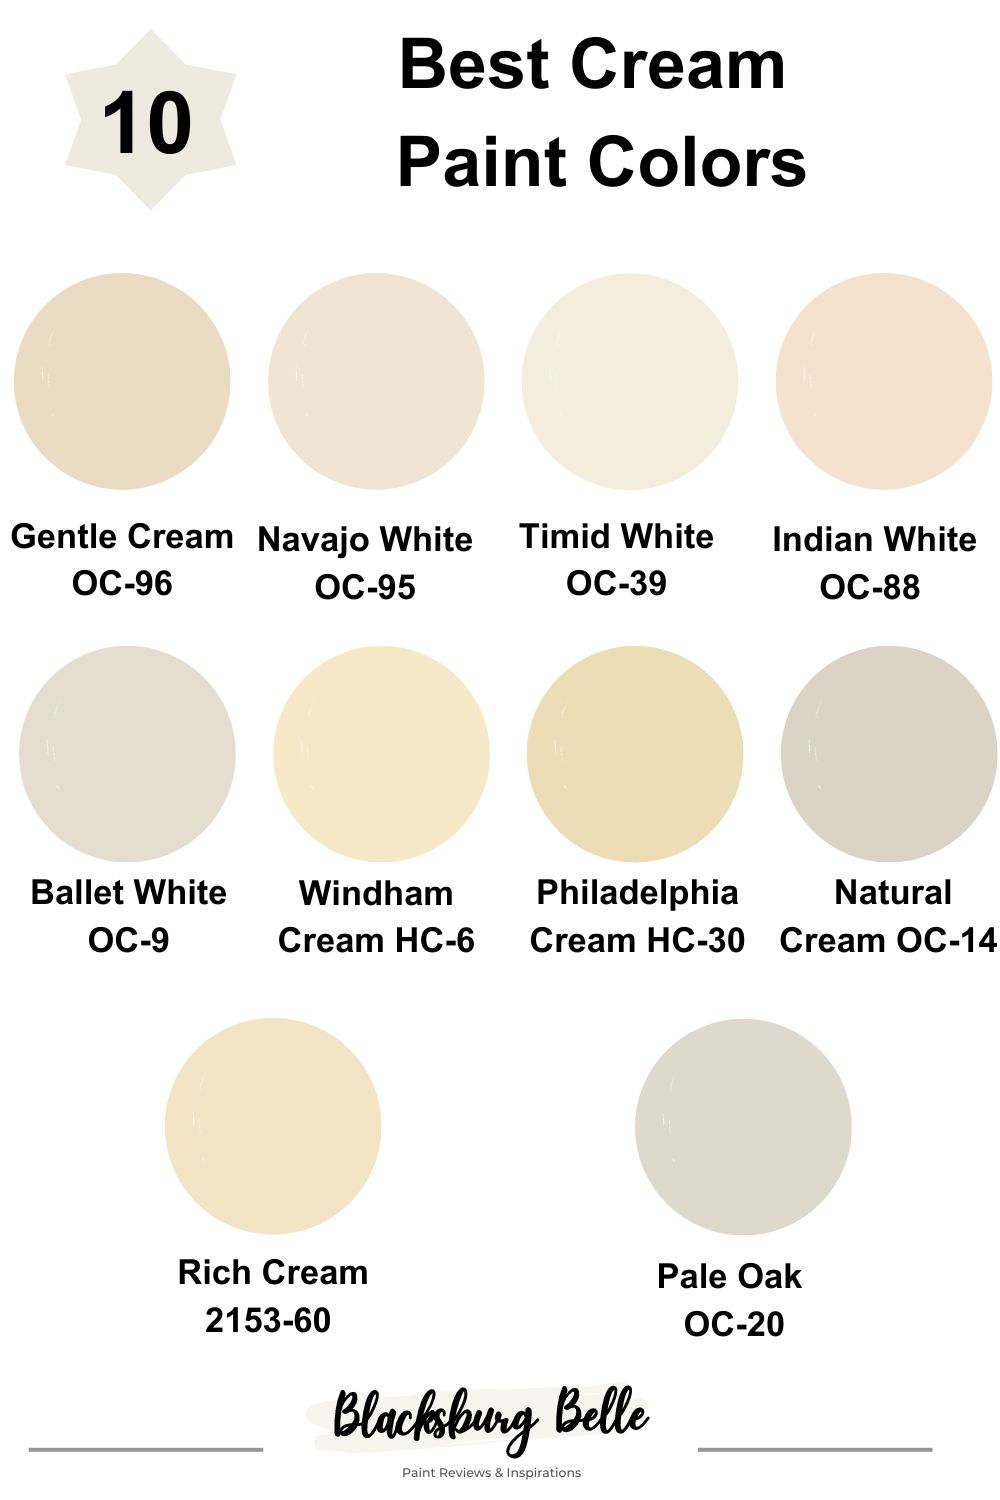 Best Cream Paint Colors